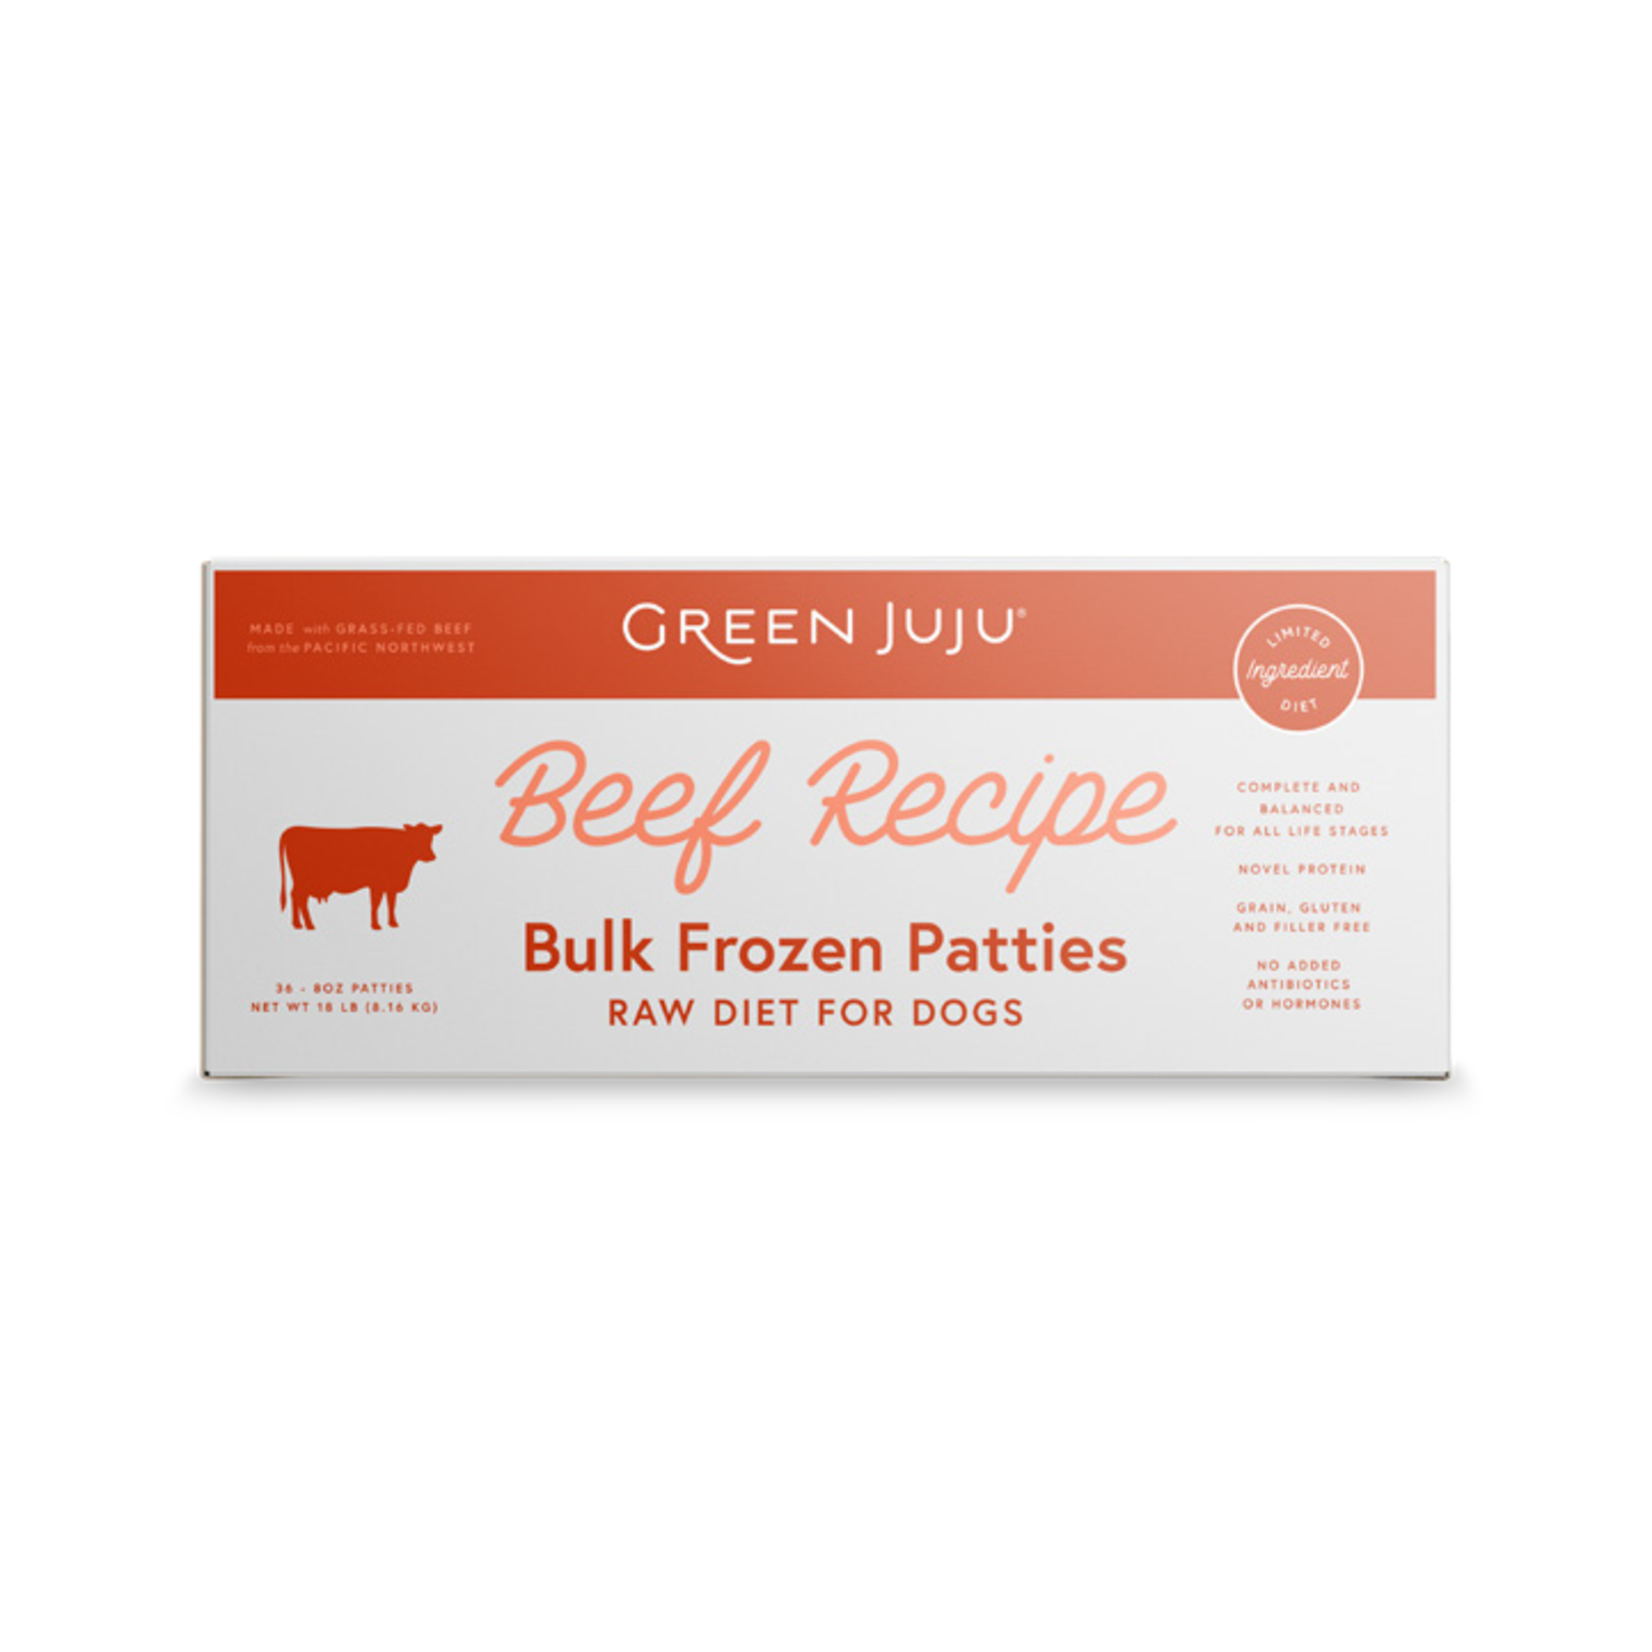 Green Juju Green Juju Frozen Patties - Beef Recipe Raw Diet